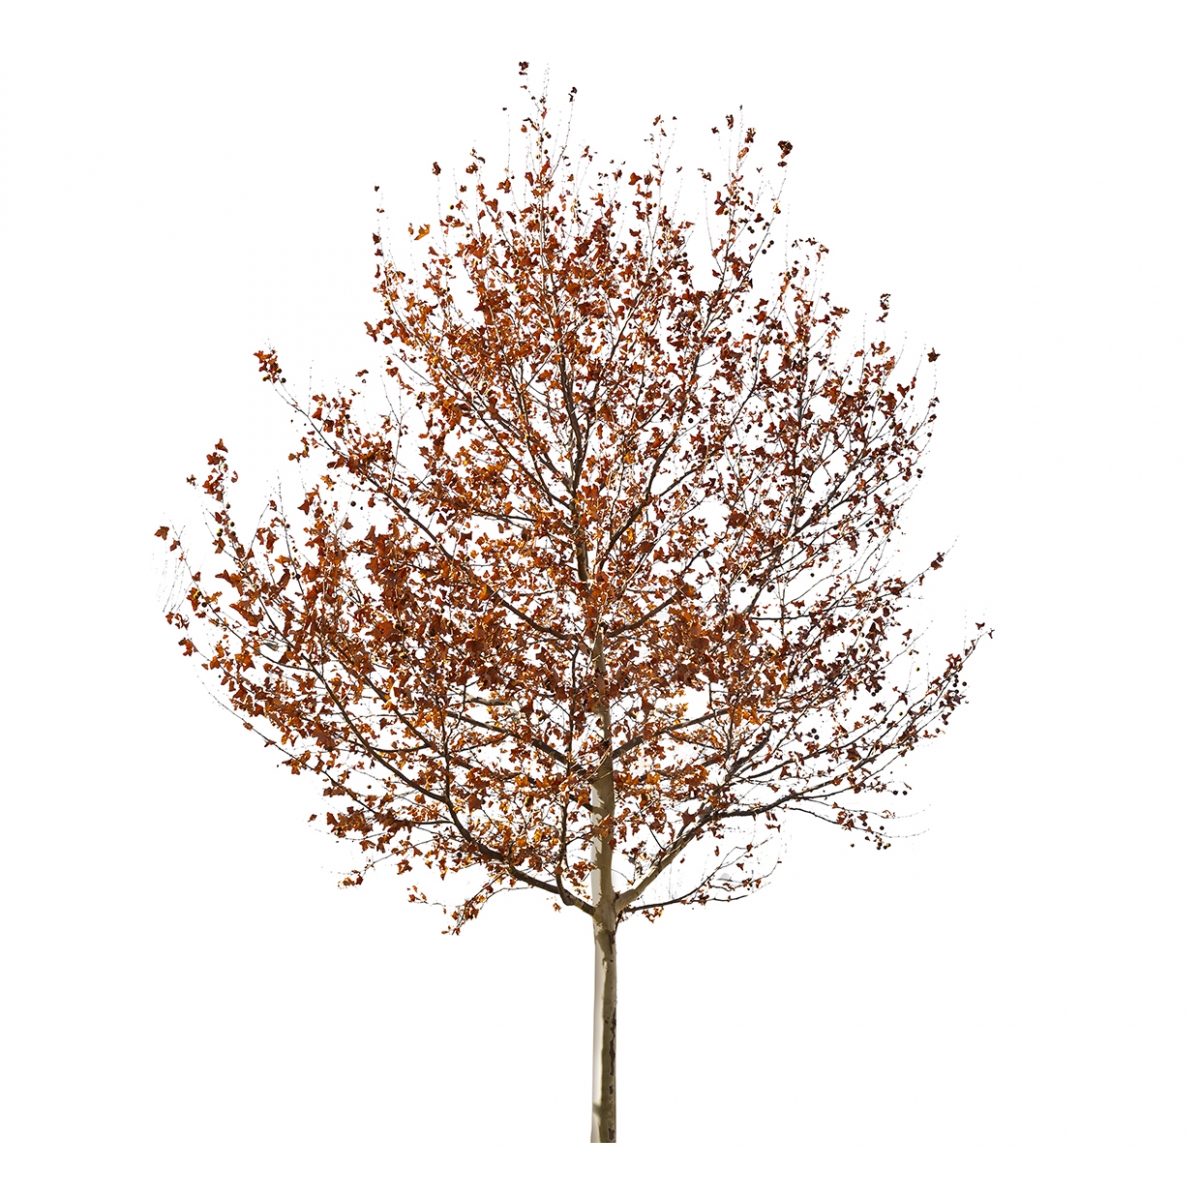 Imagen en la que se ve un árbol con hojas secas